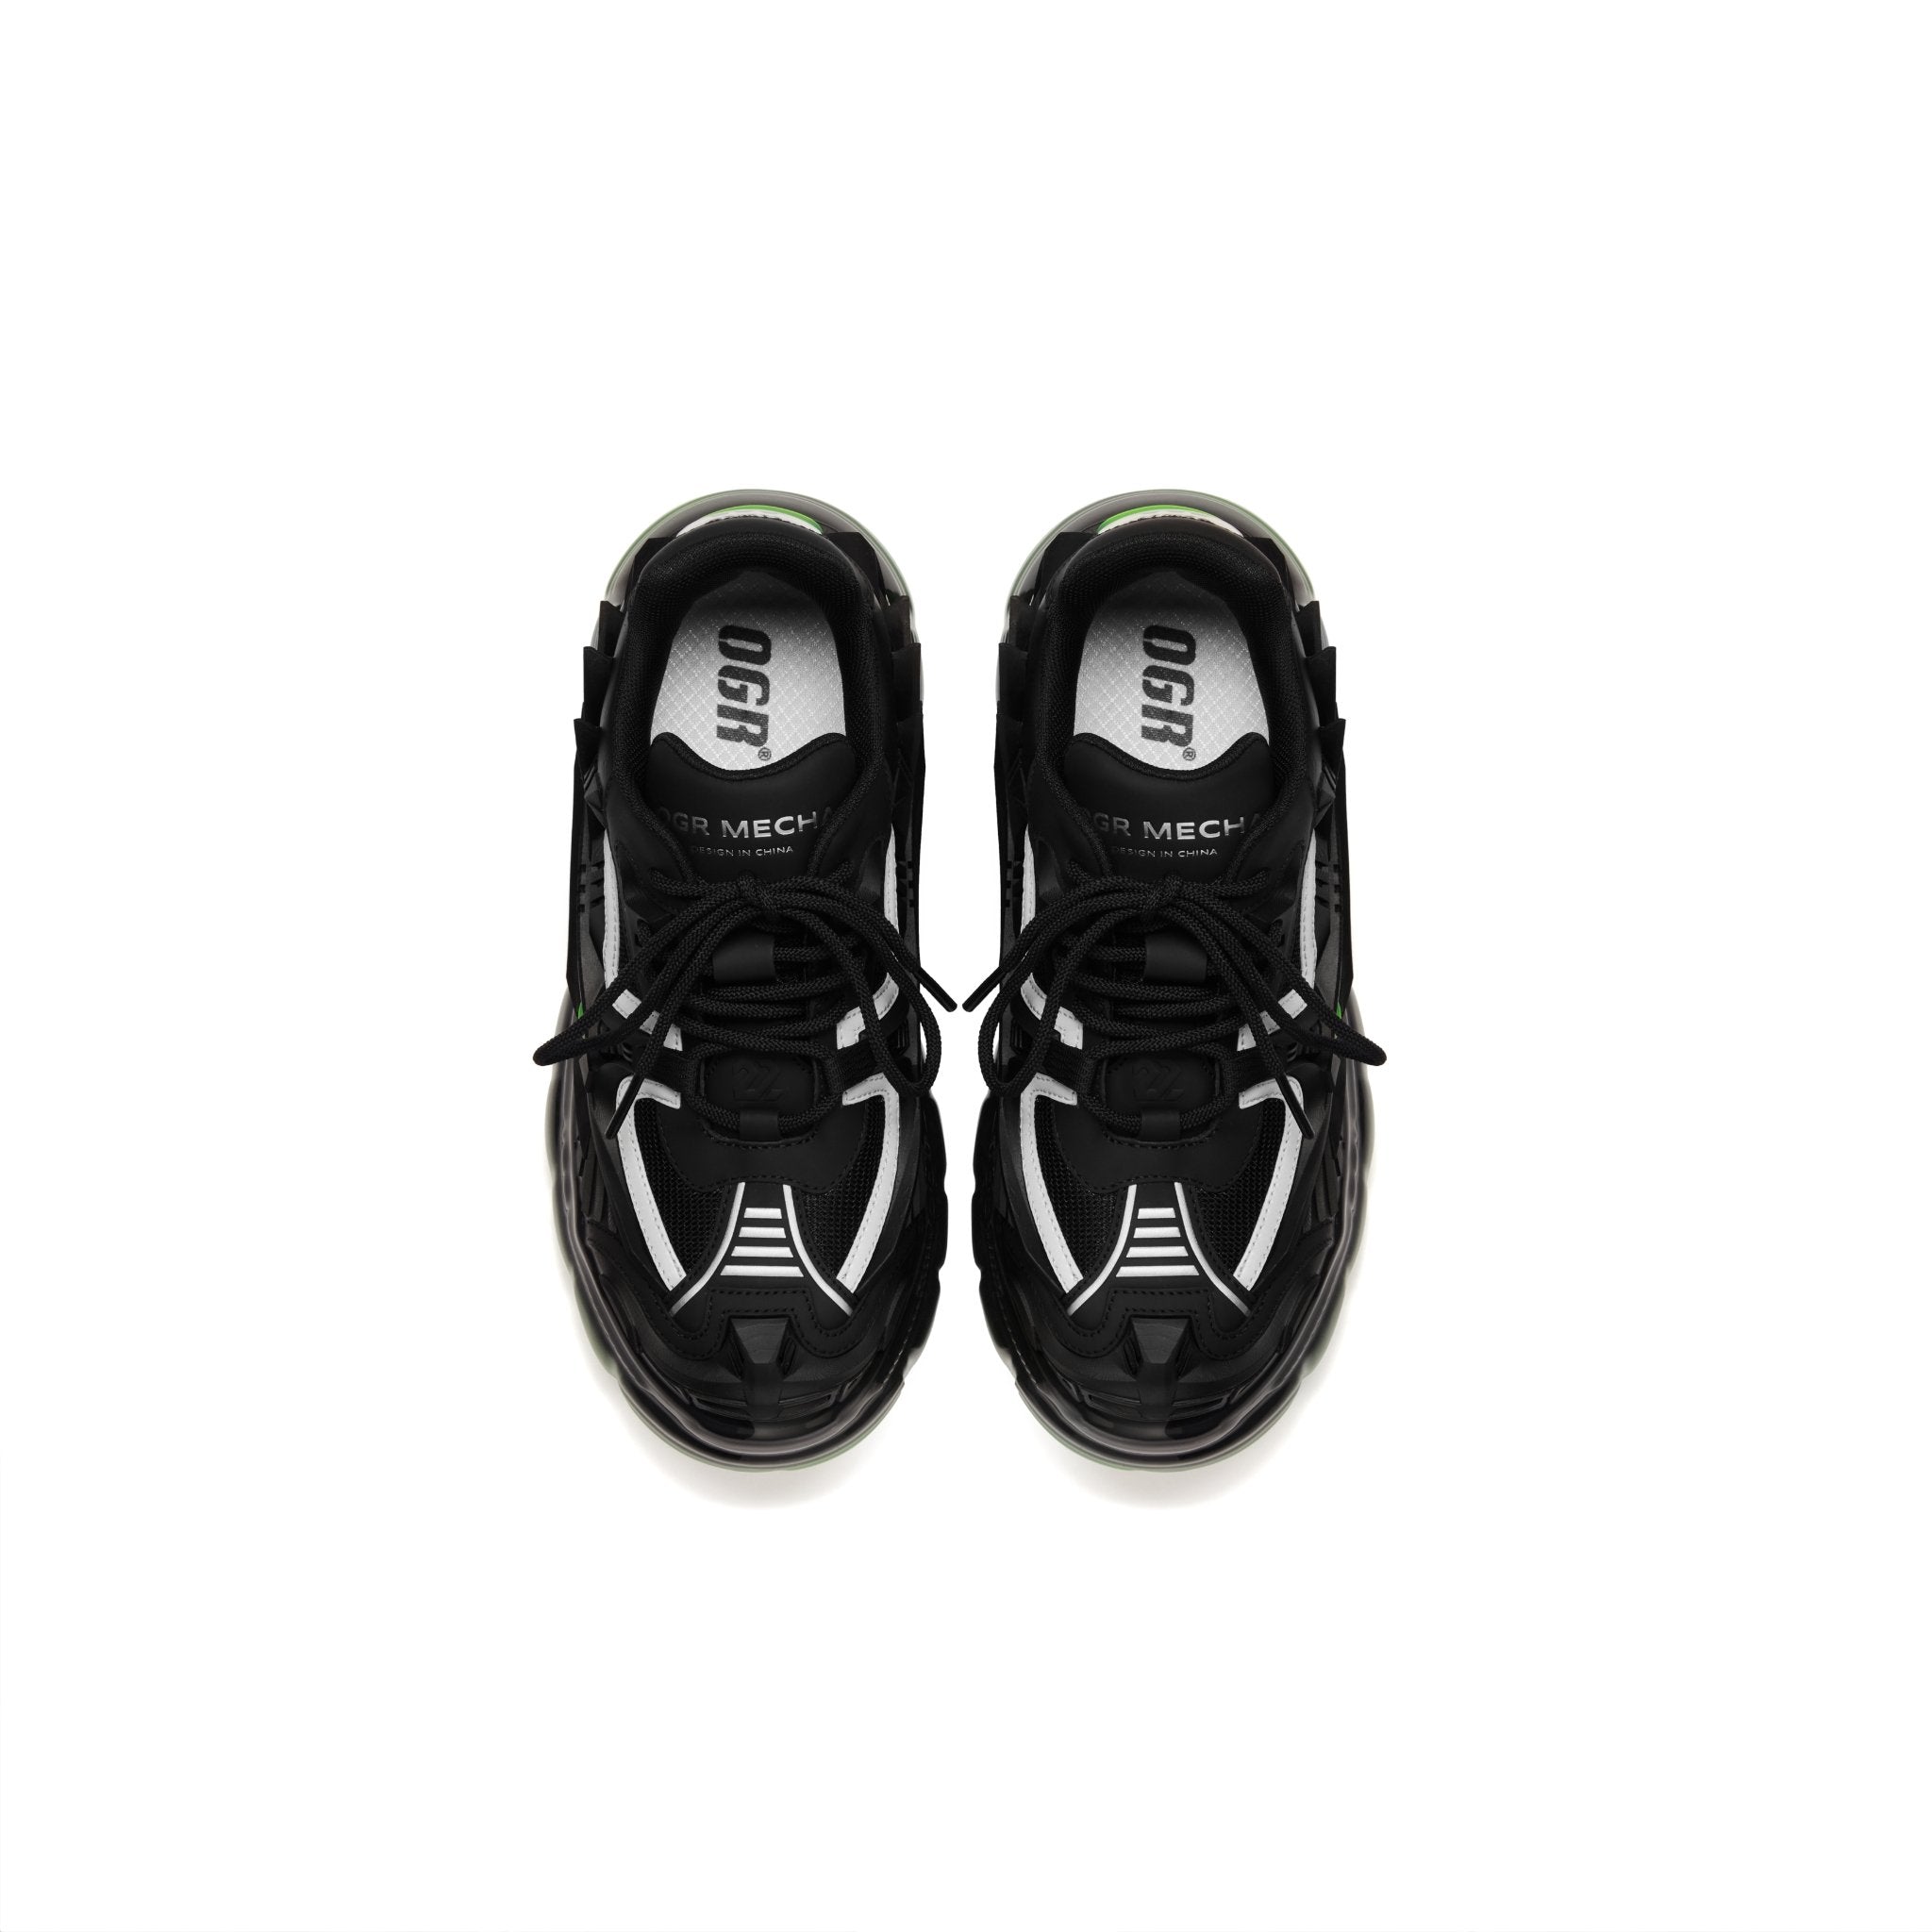 OGR Evolution 3D Mecha Shoes Black & MADA IN CHINA